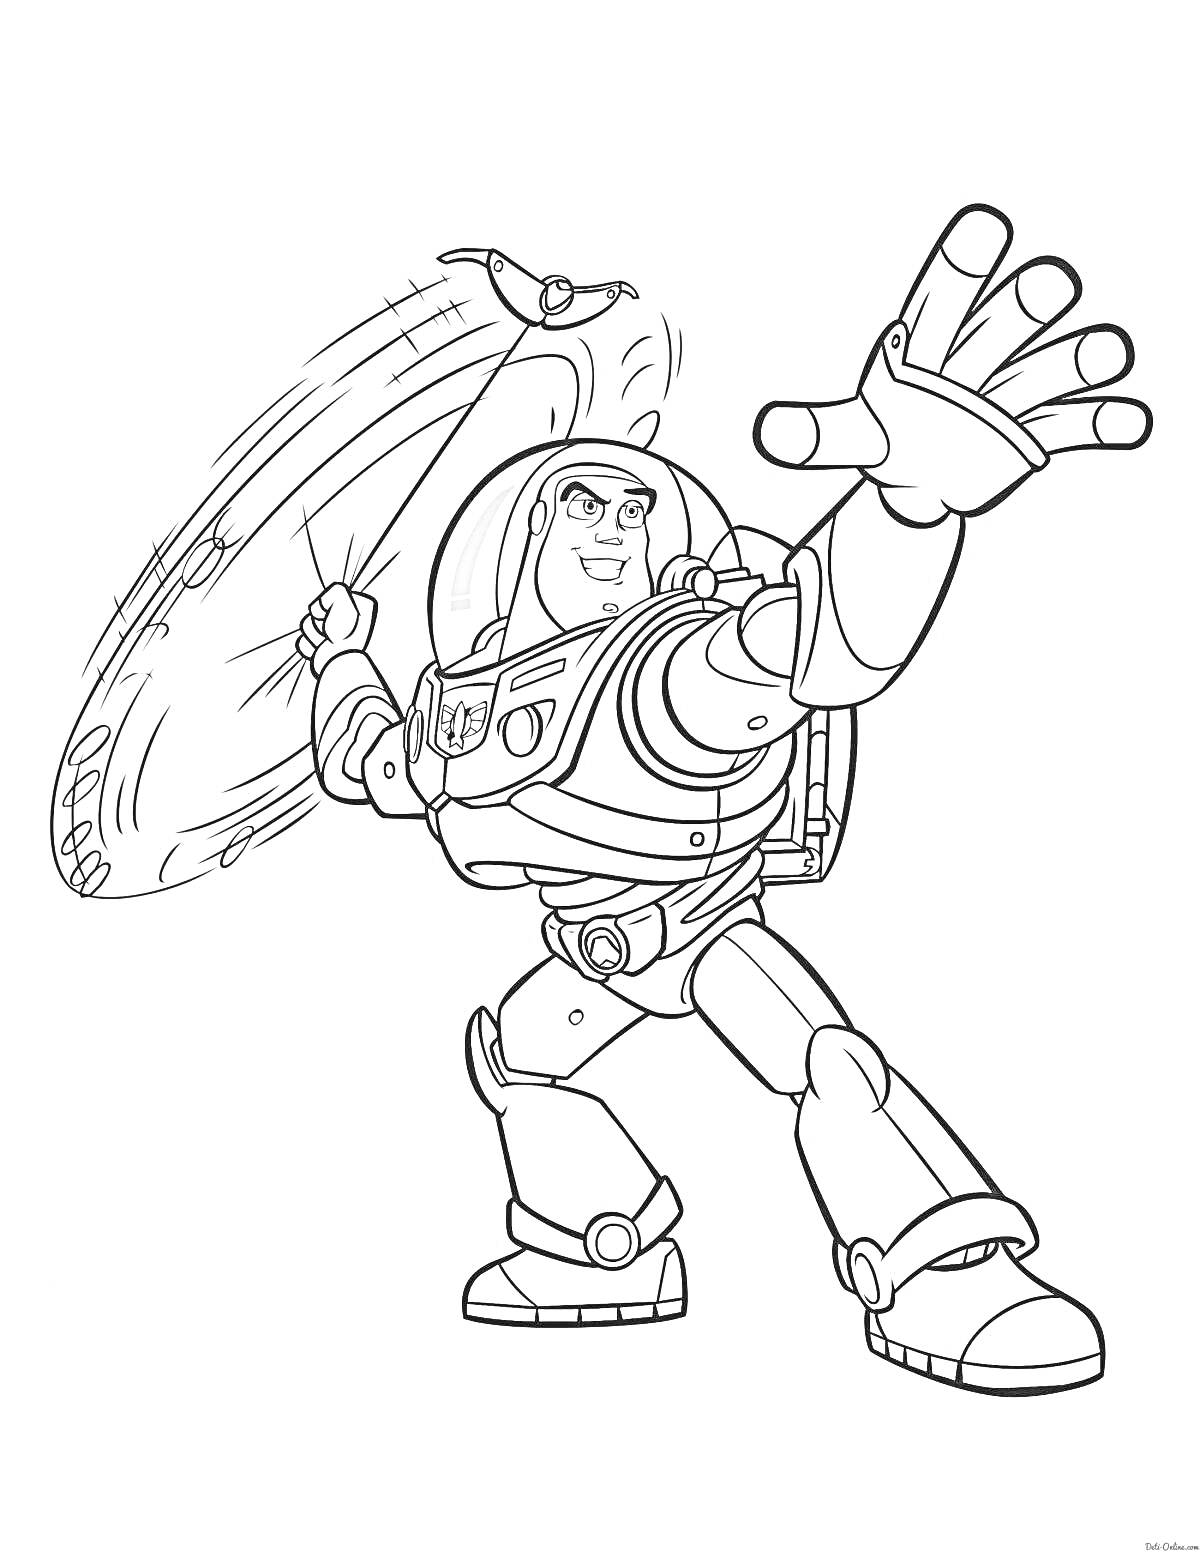 Раскраска Космический герой в боевой стойке, левитирующая доска за спиной, правая рука поднята с открытой ладонью.